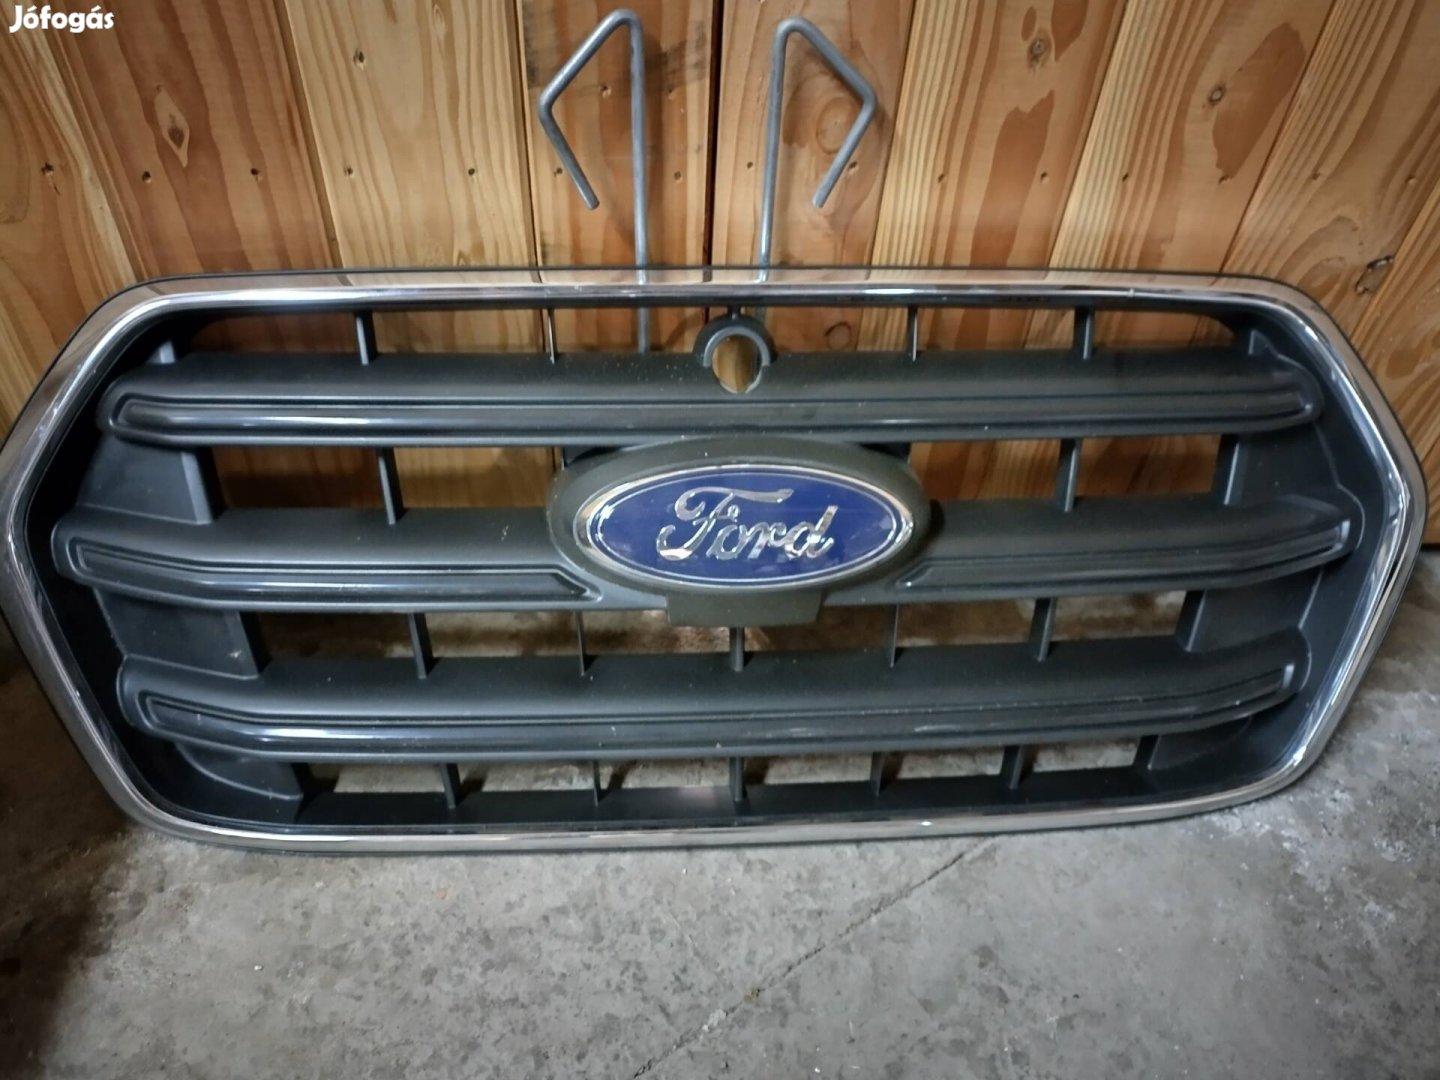 Ford Transit hütögrill hütömaszk hűtőrács